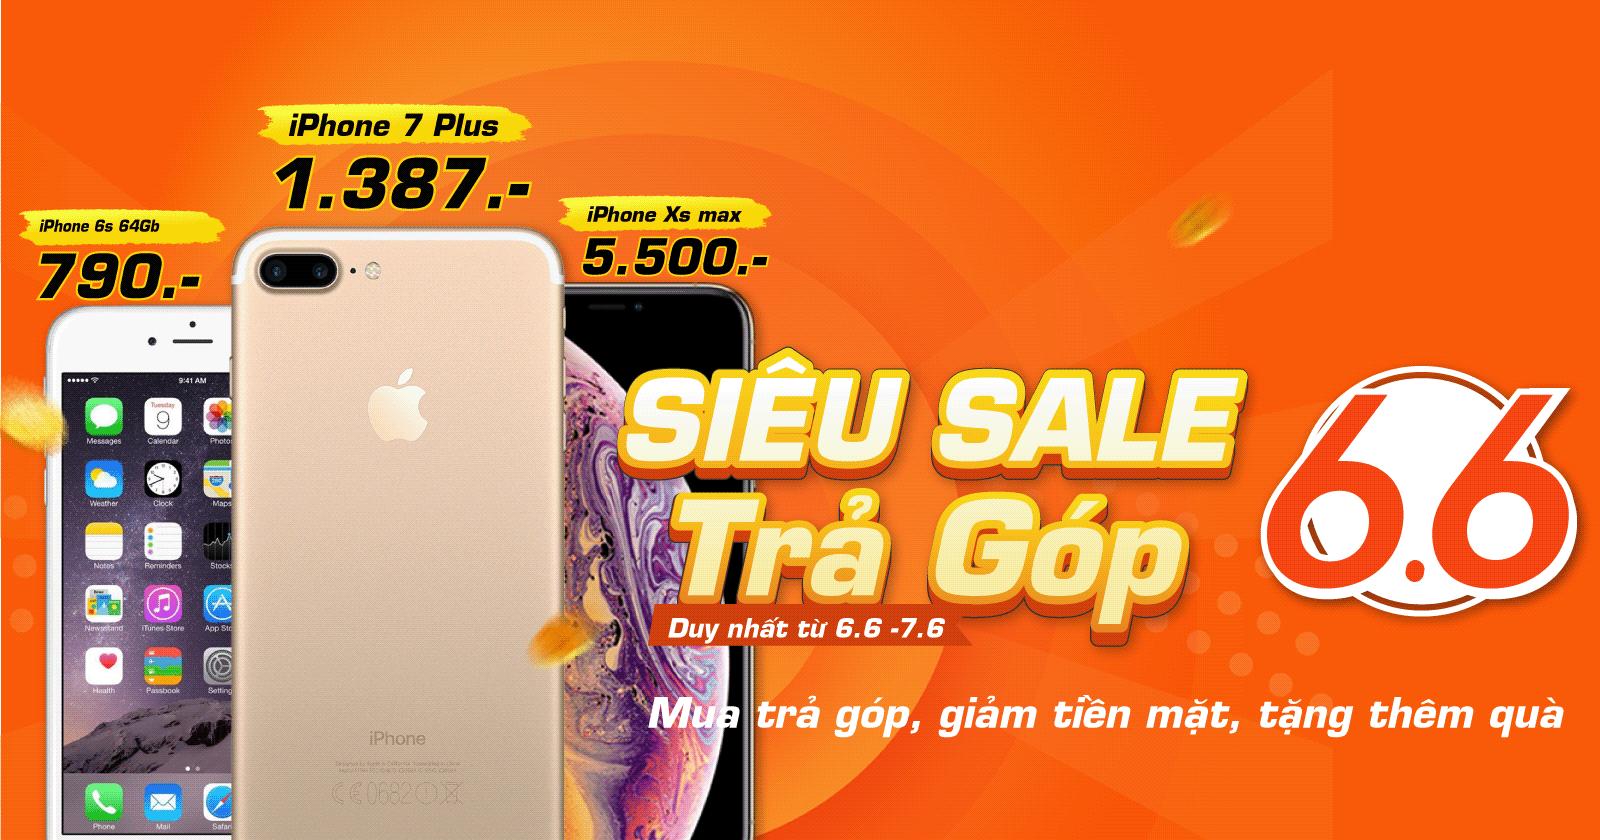 Siêu iPhone – Siêu trả góp tại Minh Hoàng Mobile, nhanh chân nào – thời gian có hạn